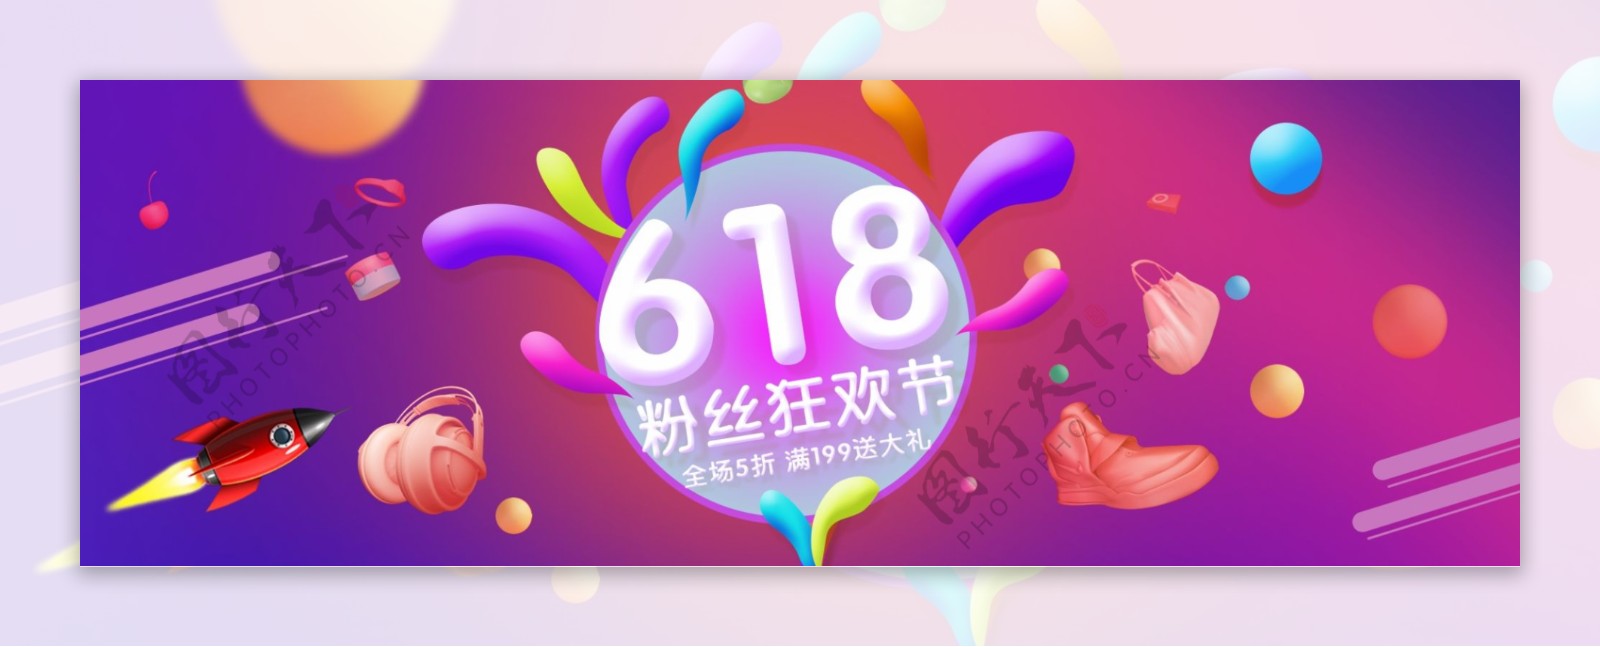 电商淘宝天猫京东618粉丝狂欢节全屏海报